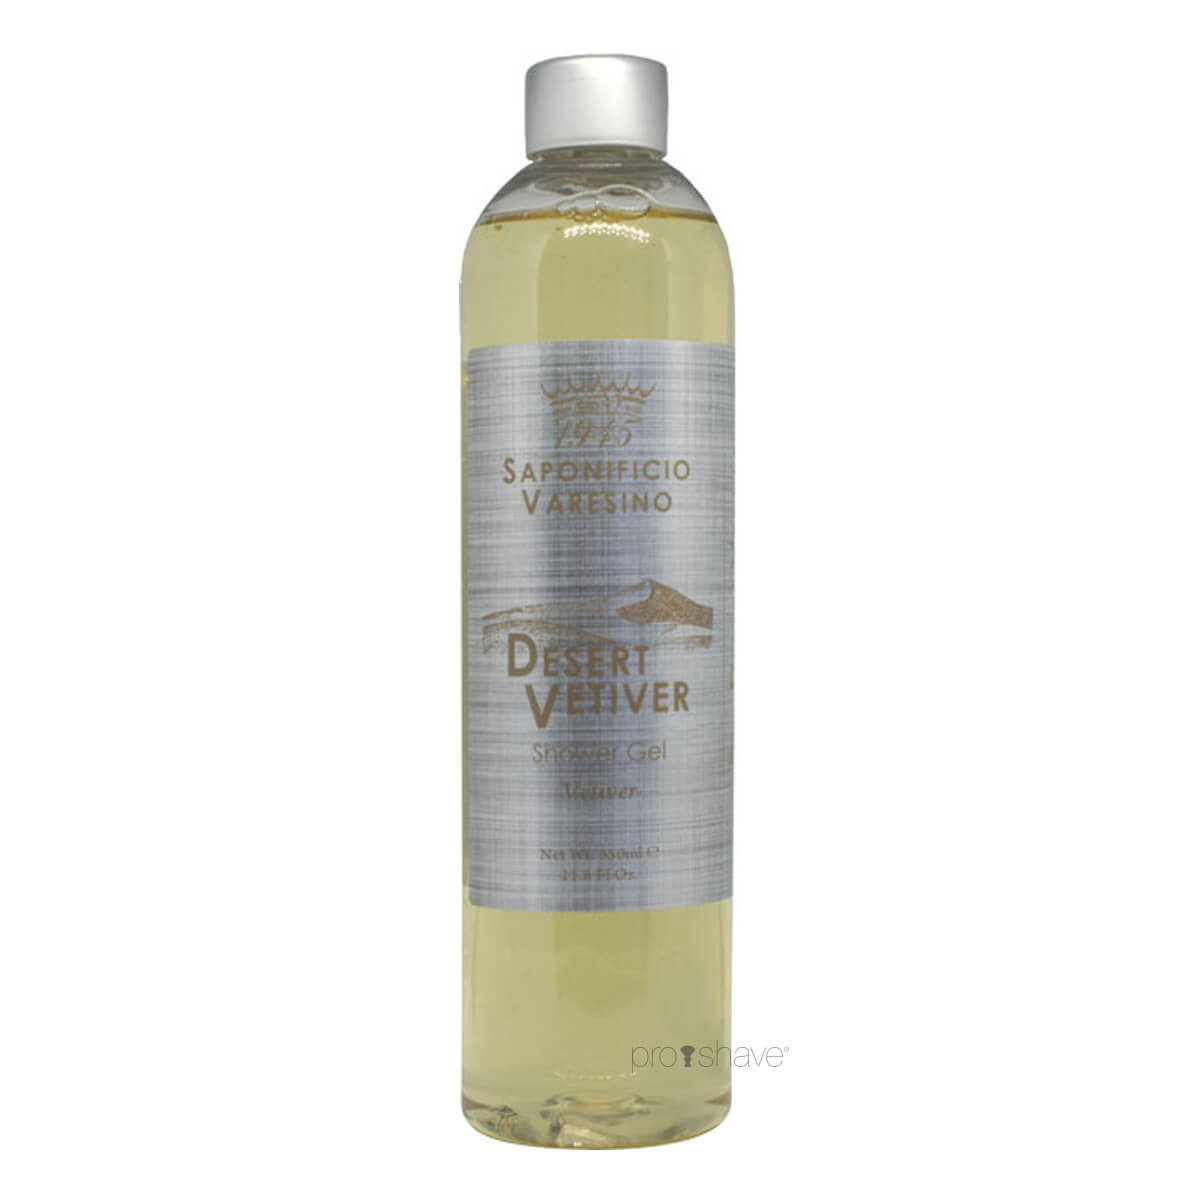 Se Saponificio Varesino Shower Gel, Desert Vetiver, 350 ml. hos Proshave